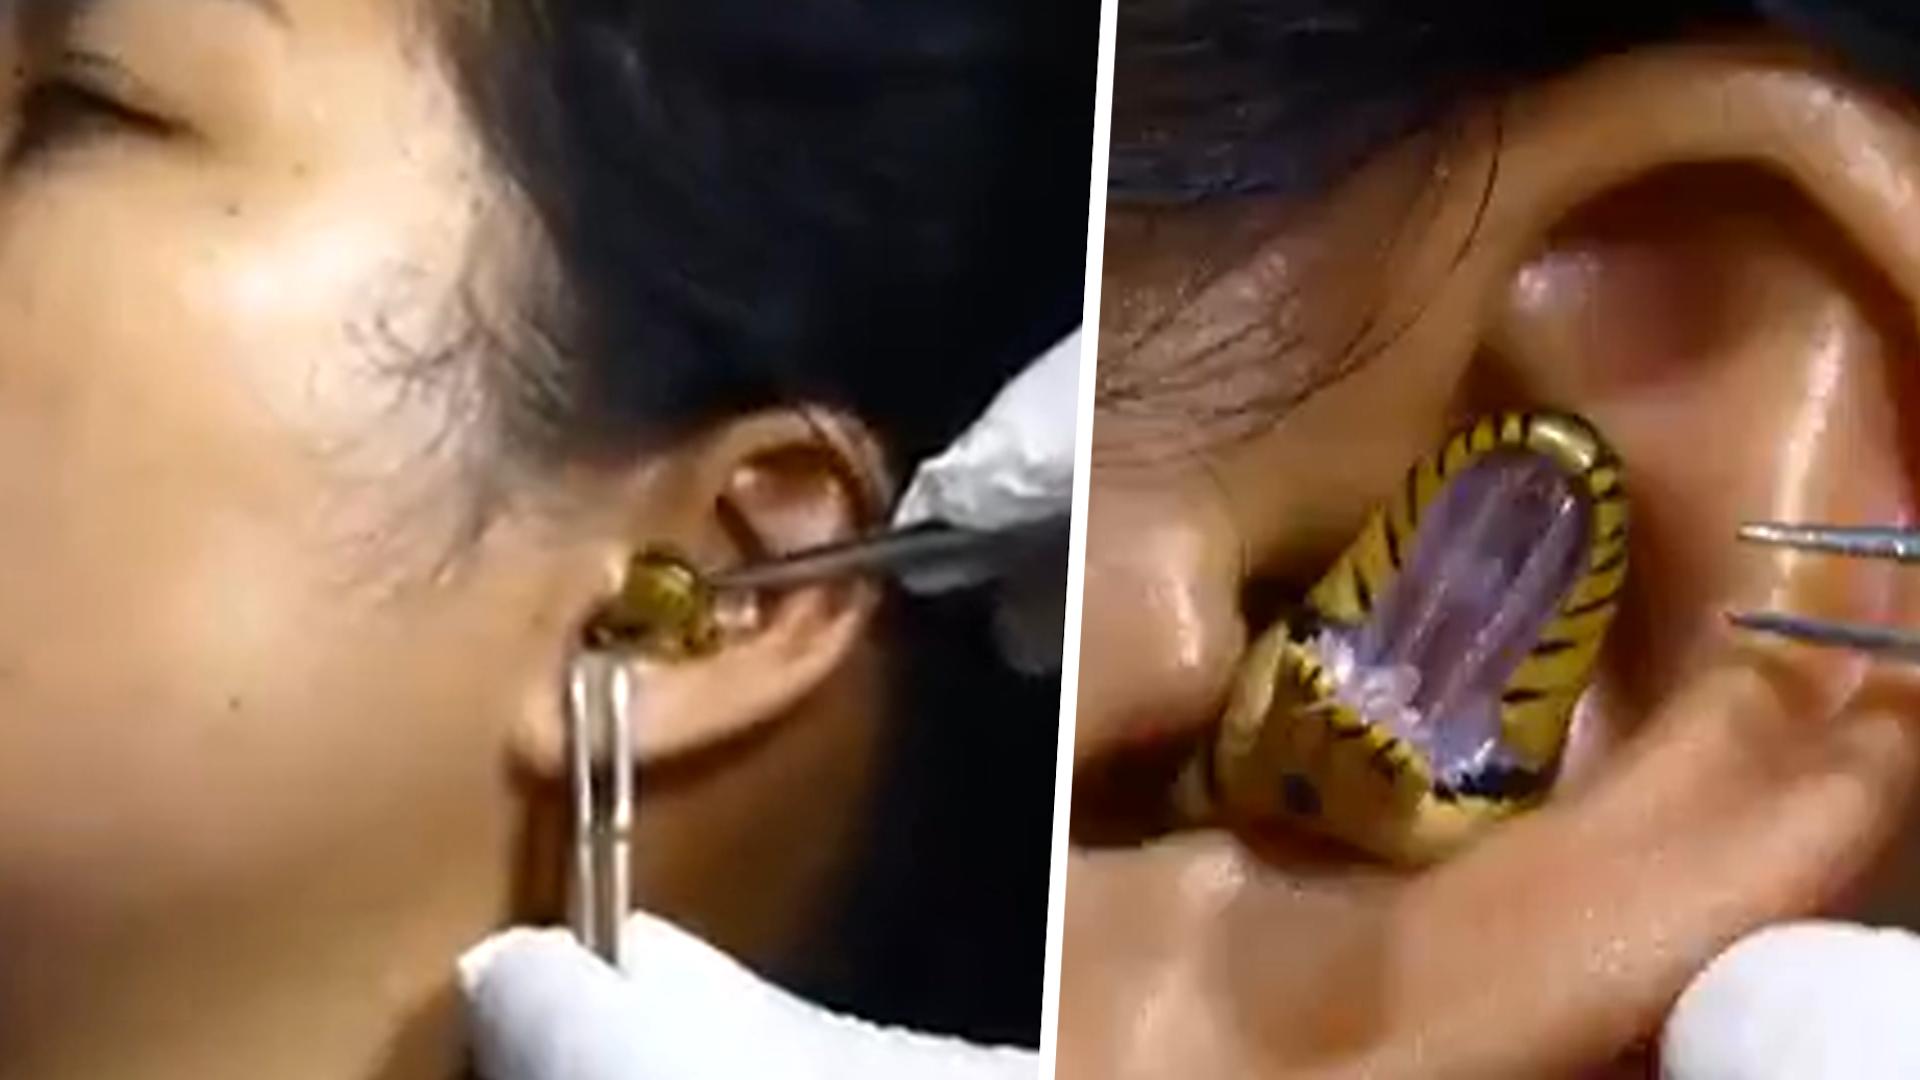 Frau geht mit Schlange im Ohr zum Arzt - kann das echt sein? Video sorgt für Aufsehen